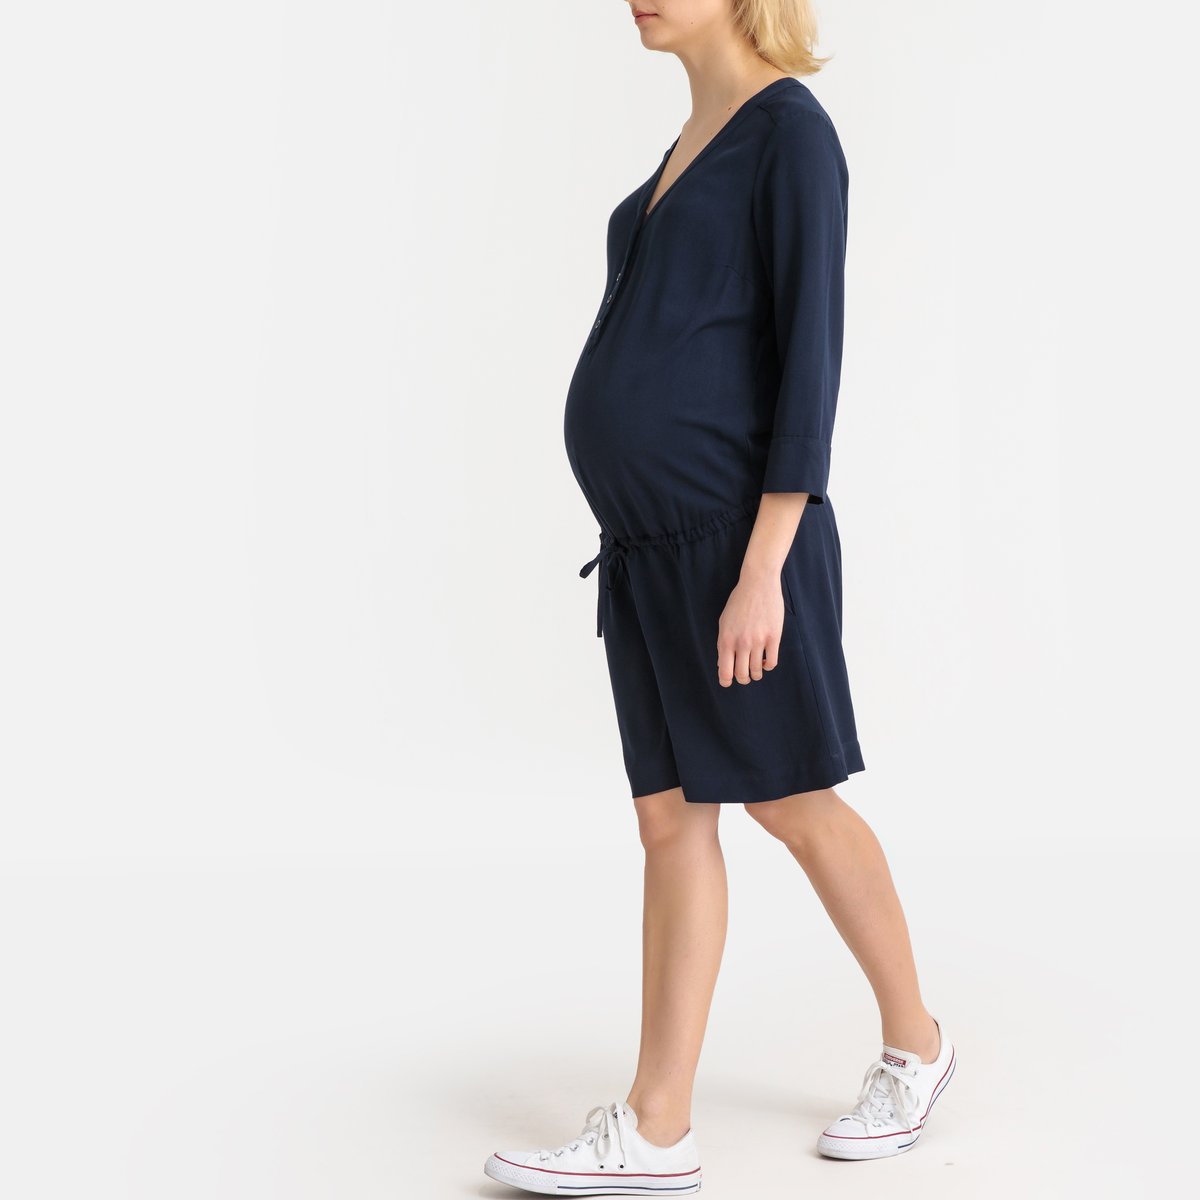 Комбинезон La Redoute С шортами для периода беременности 38 (FR) - 44 (RUS) синий, размер 38 (FR) - 44 (RUS) С шортами для периода беременности 38 (FR) - 44 (RUS) синий - фото 2